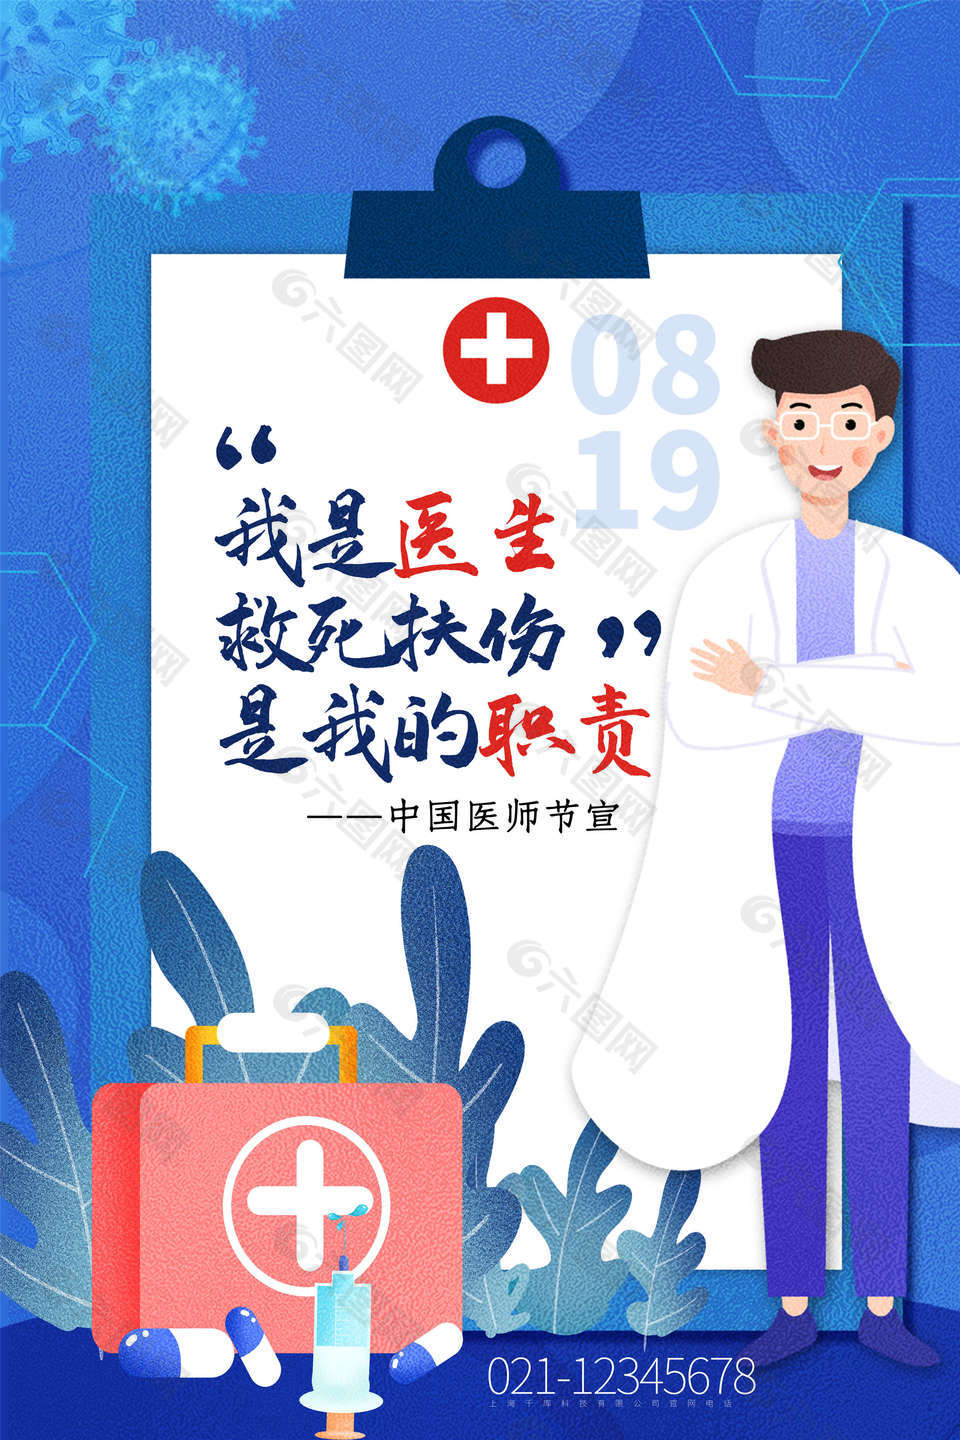 中国医师节致敬医生海报